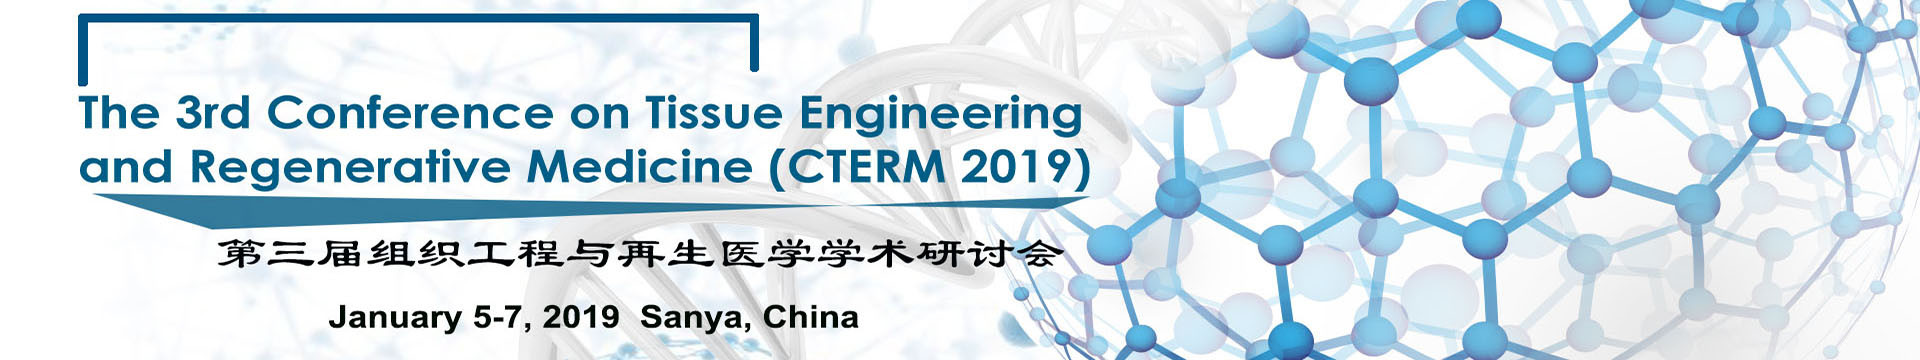 2019第三届组织医学与再生医学国际学术研讨会(CTERM 2019)